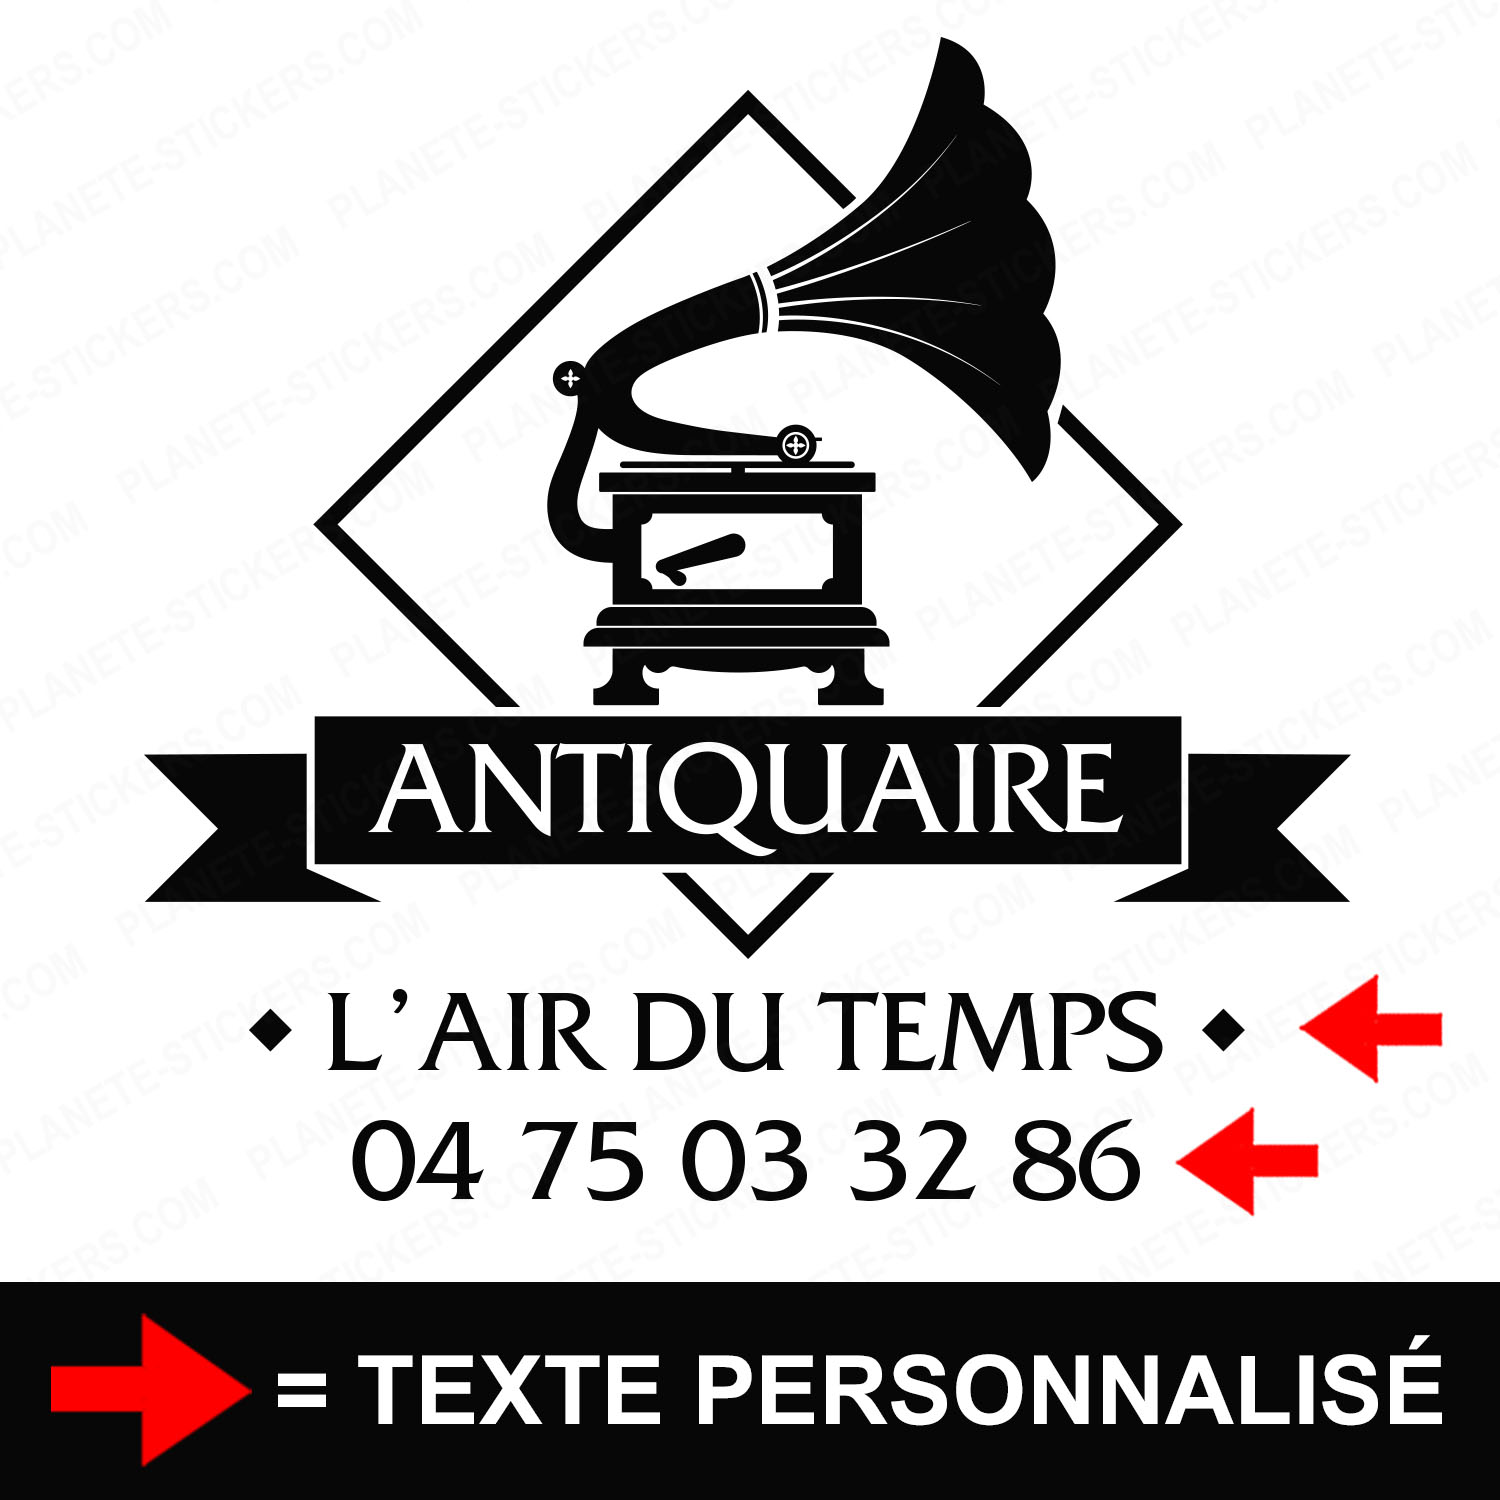 ref1antiquairevitrine-stickers-antiquaire-vitrine-sticker-personnalisé-autocollant-antiquité-vitrophanie-vitre-professionnel-logo-gramophone-tourne-disque-2